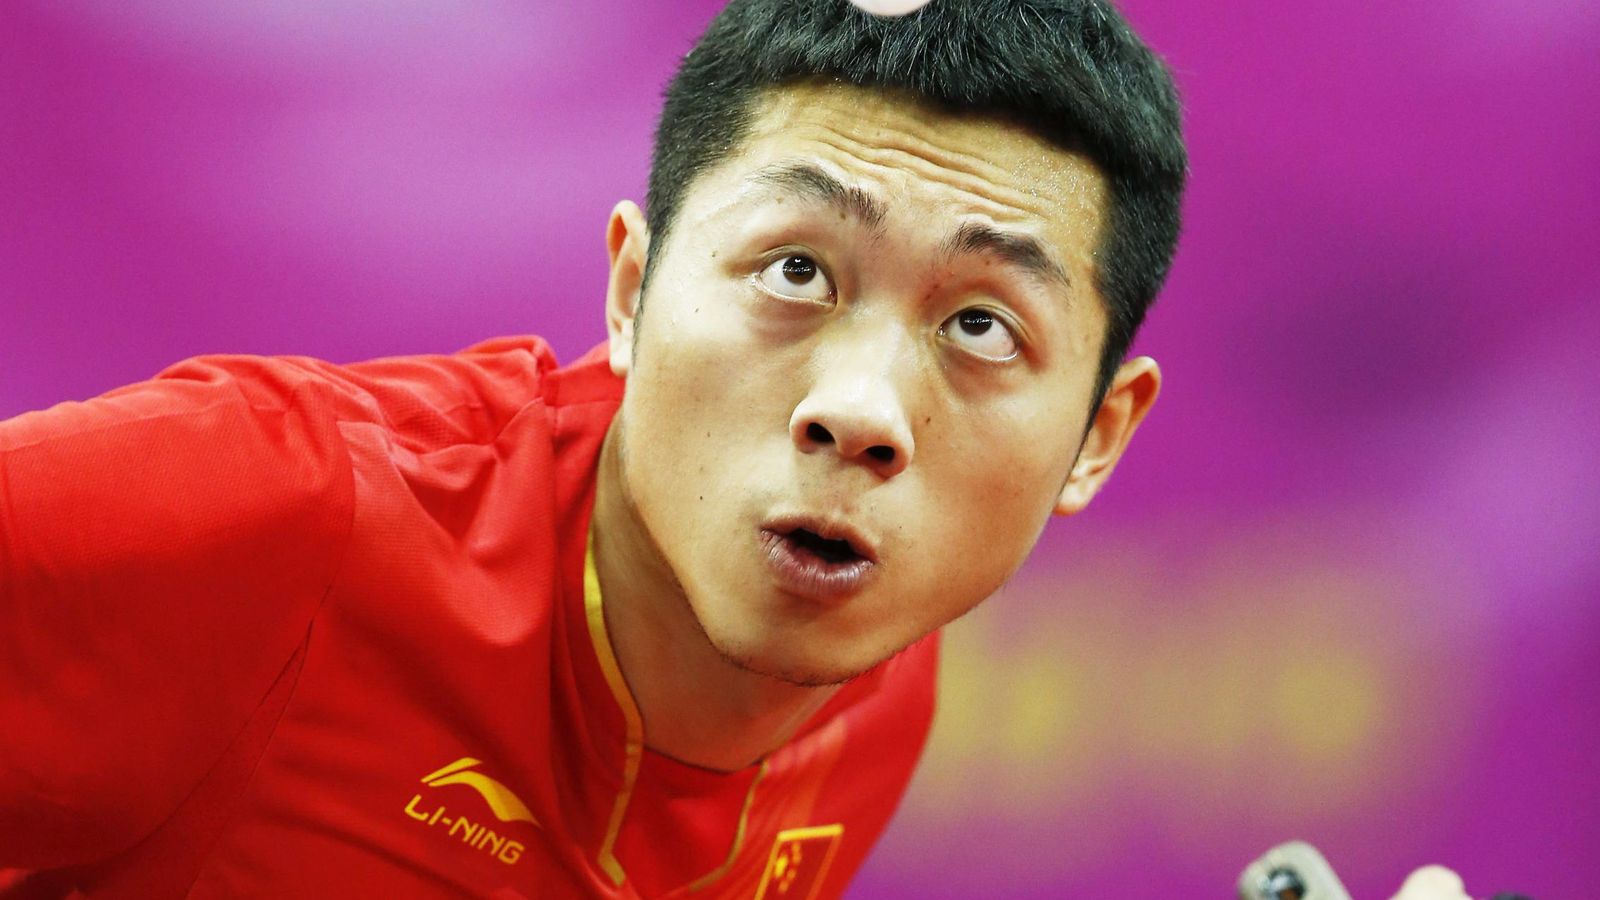 Foto: El jugador chino Xu Xin, en acción durante un partido (EFE)